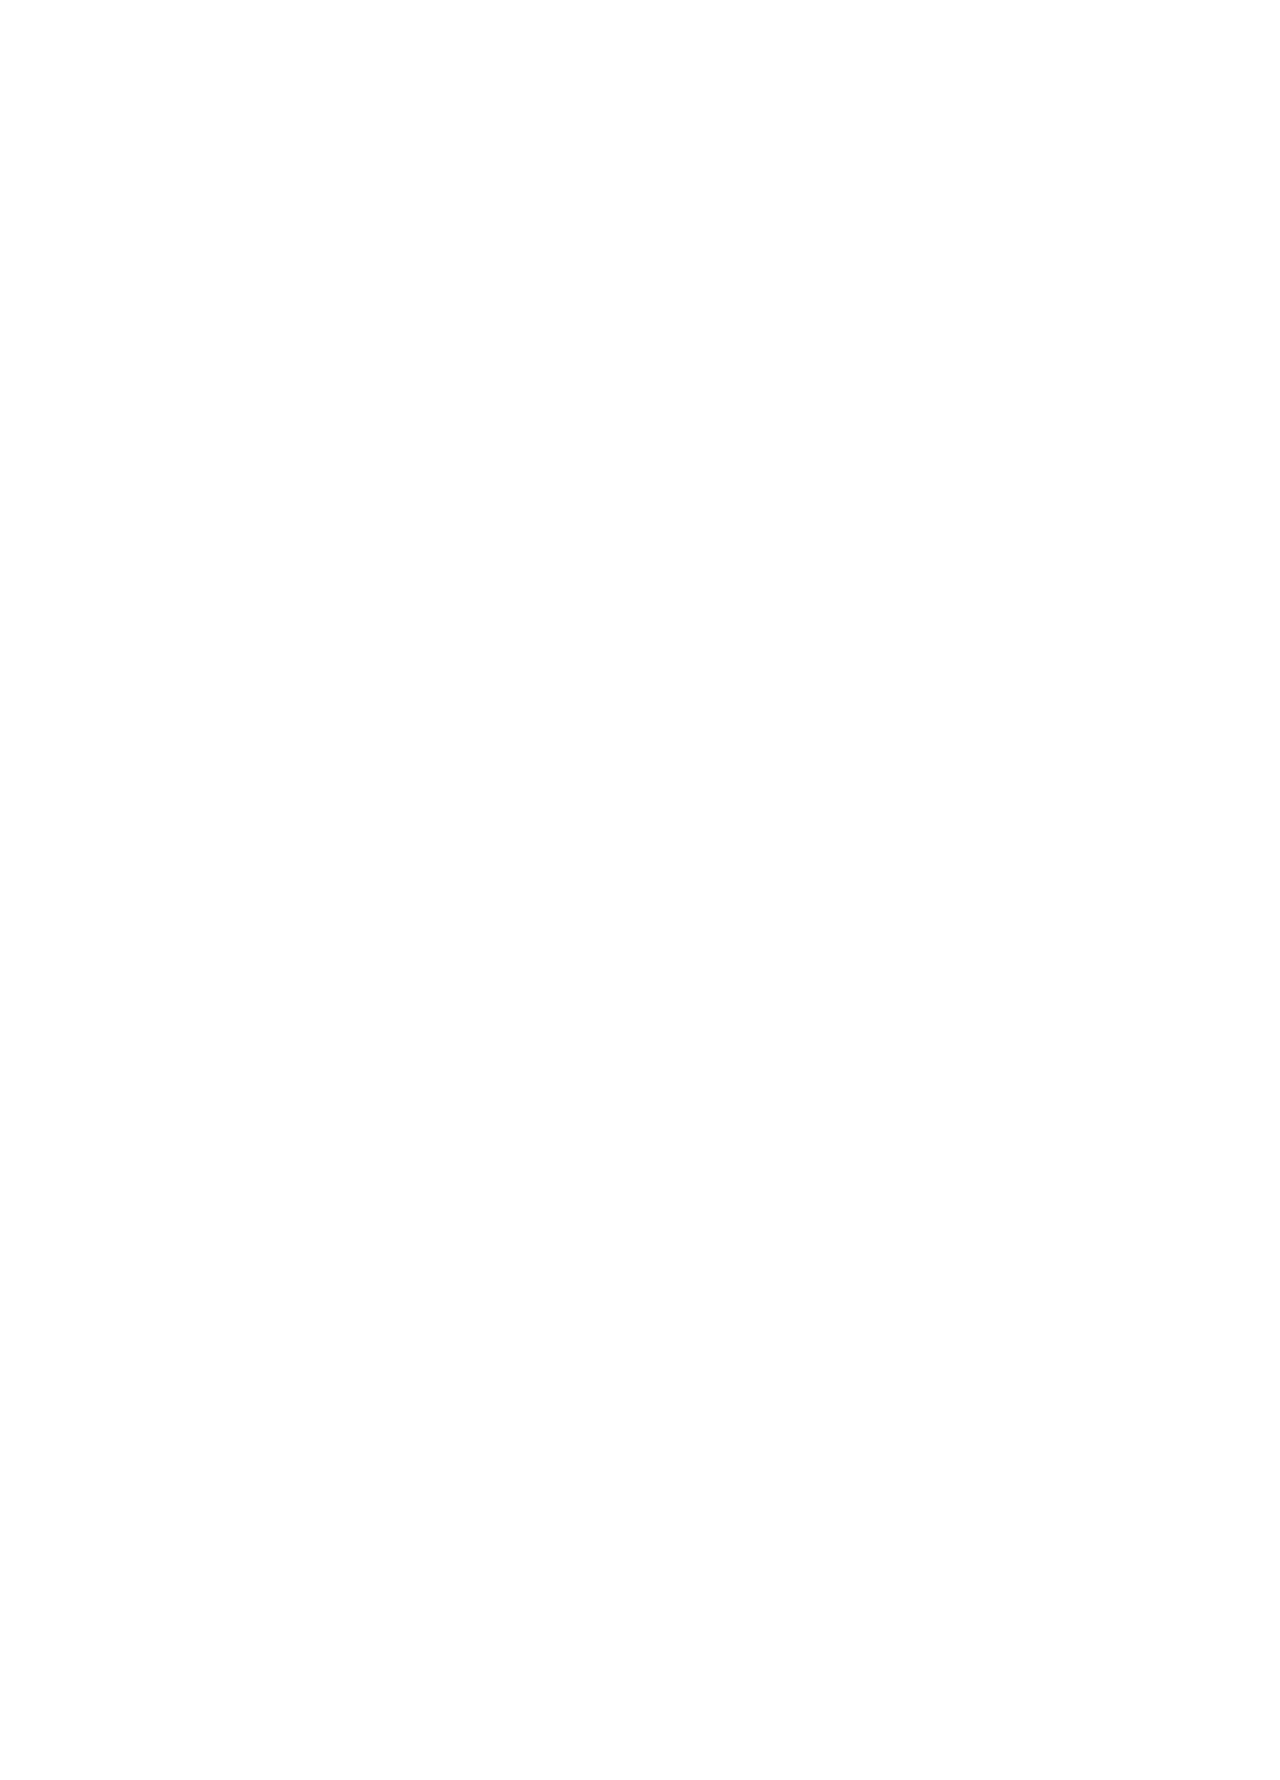 [んほぉおおおぉおおおおおお♥おっ♥おっ♥ (大童貞男)] ヤリチンにご奉仕セックスする生オナホと性処理メイド寝取らせ本 (Fate/Grand Order) [英訳] [DL版]